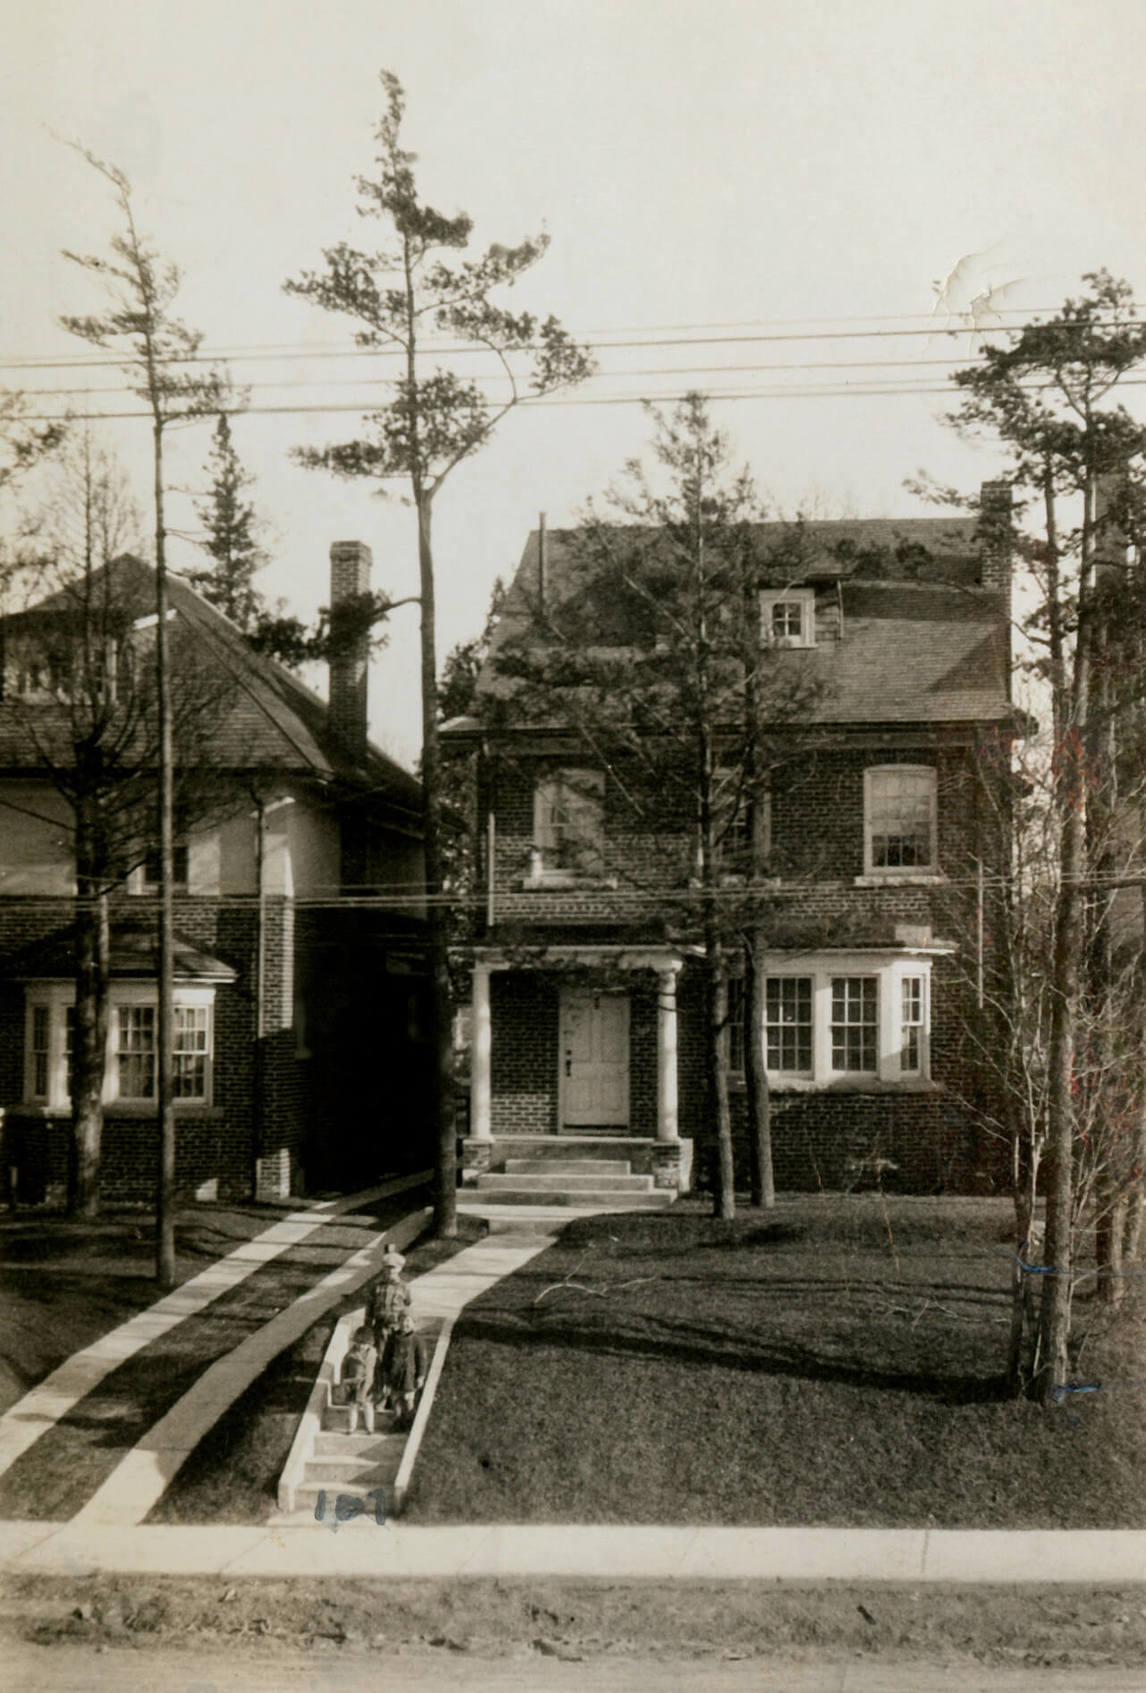  Les trois enfants des Brooker devant la maison familiale, au 109 Glenview Avenue, Toronto, durant les années 1930